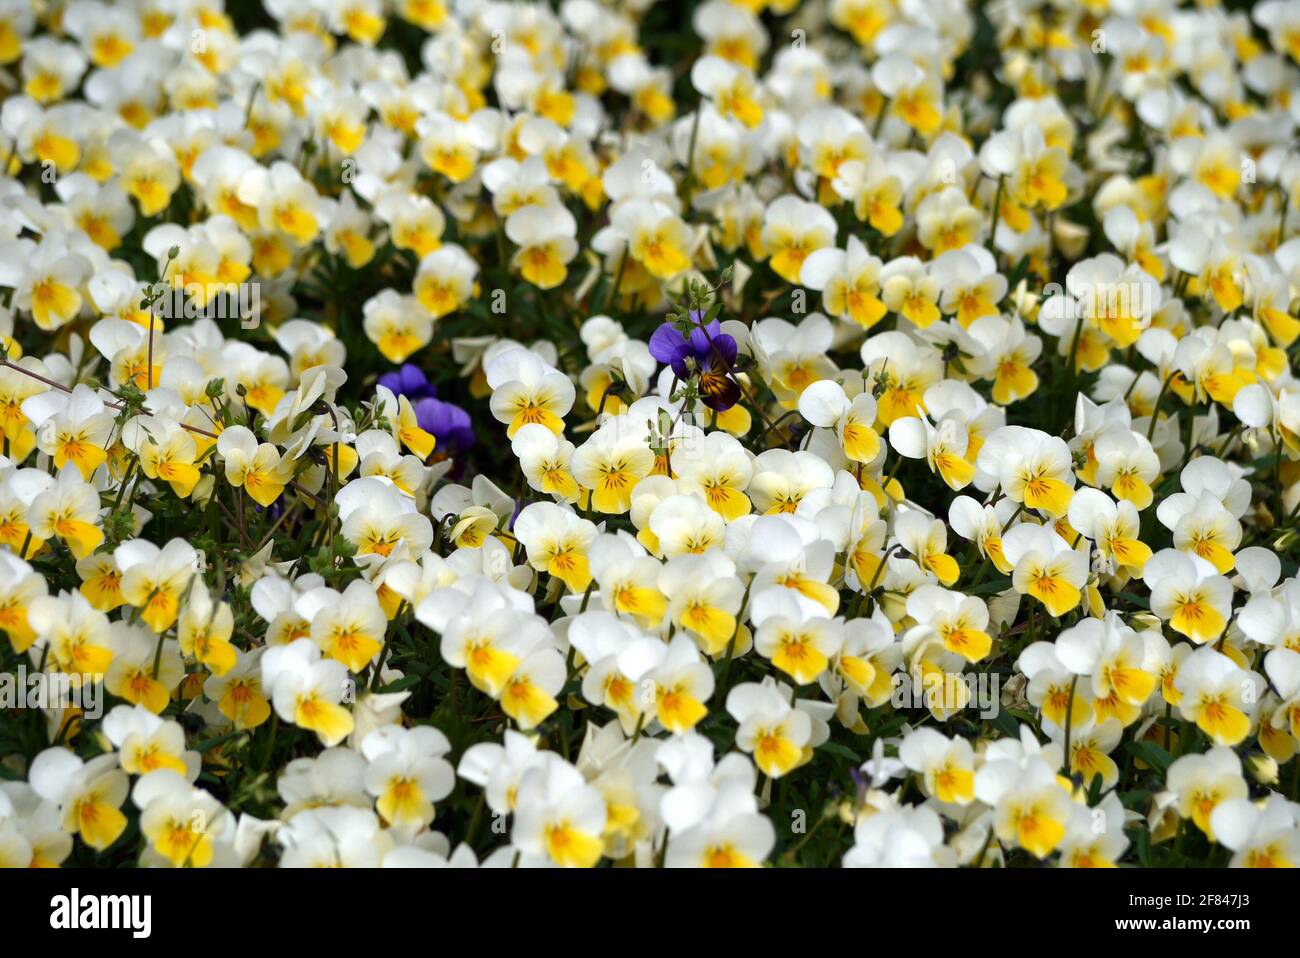 In einem Meer aus weiß-gelben Stiefmütterchen (Viola tricolor) habe sich zwei blaue Blüten verirrt. Die Blüten sind essbar und schmücken edle Speisen. Stock Photo